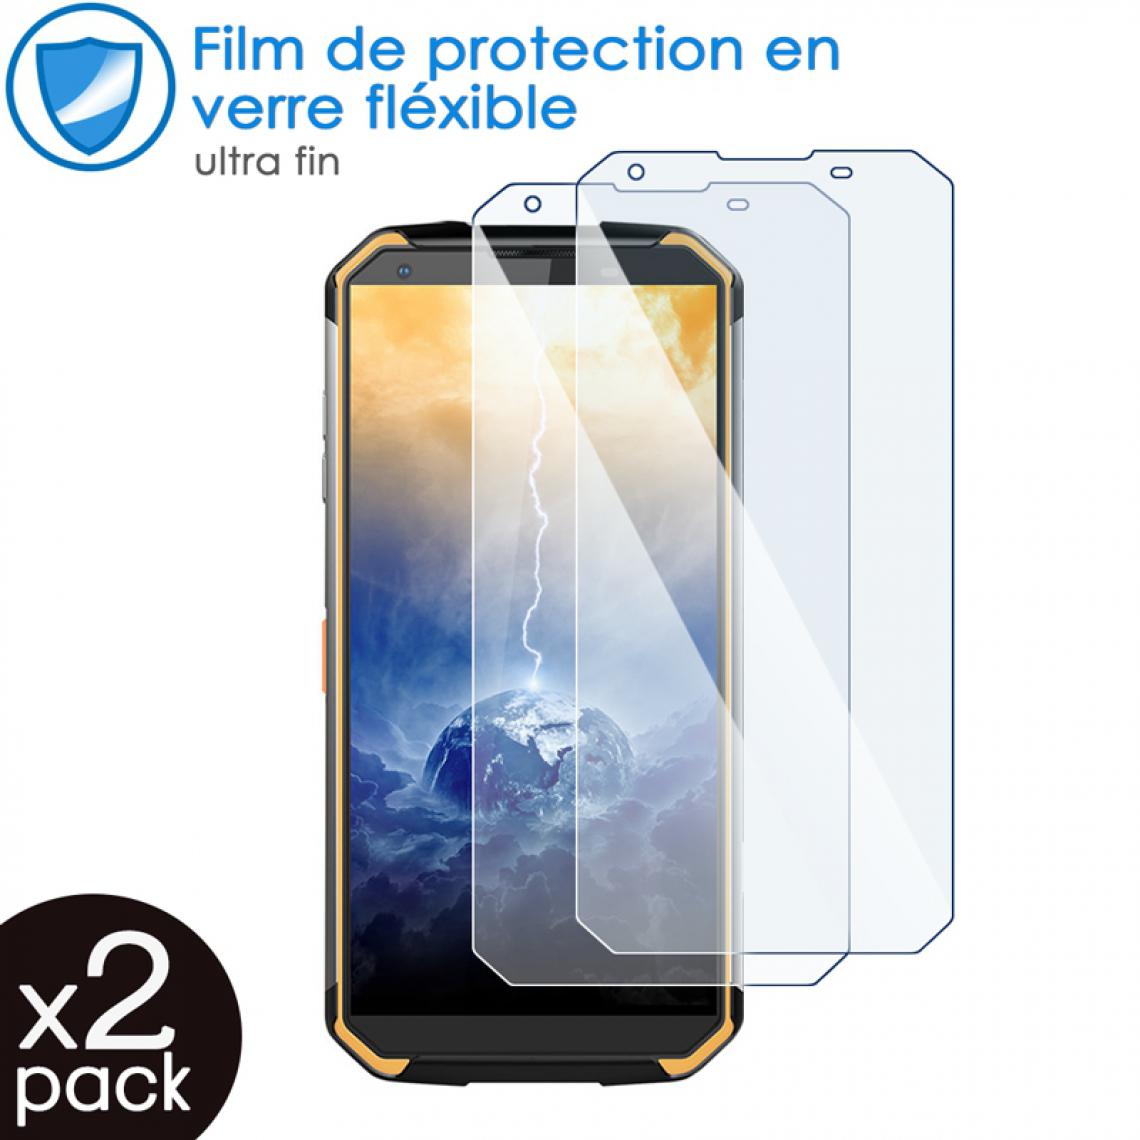 Karylax - Film de Protection d'écran en Verre Fléxible Dureté 9H pour Smartphone Blackview BV9500 Pro (Pack x2) - Protection écran smartphone